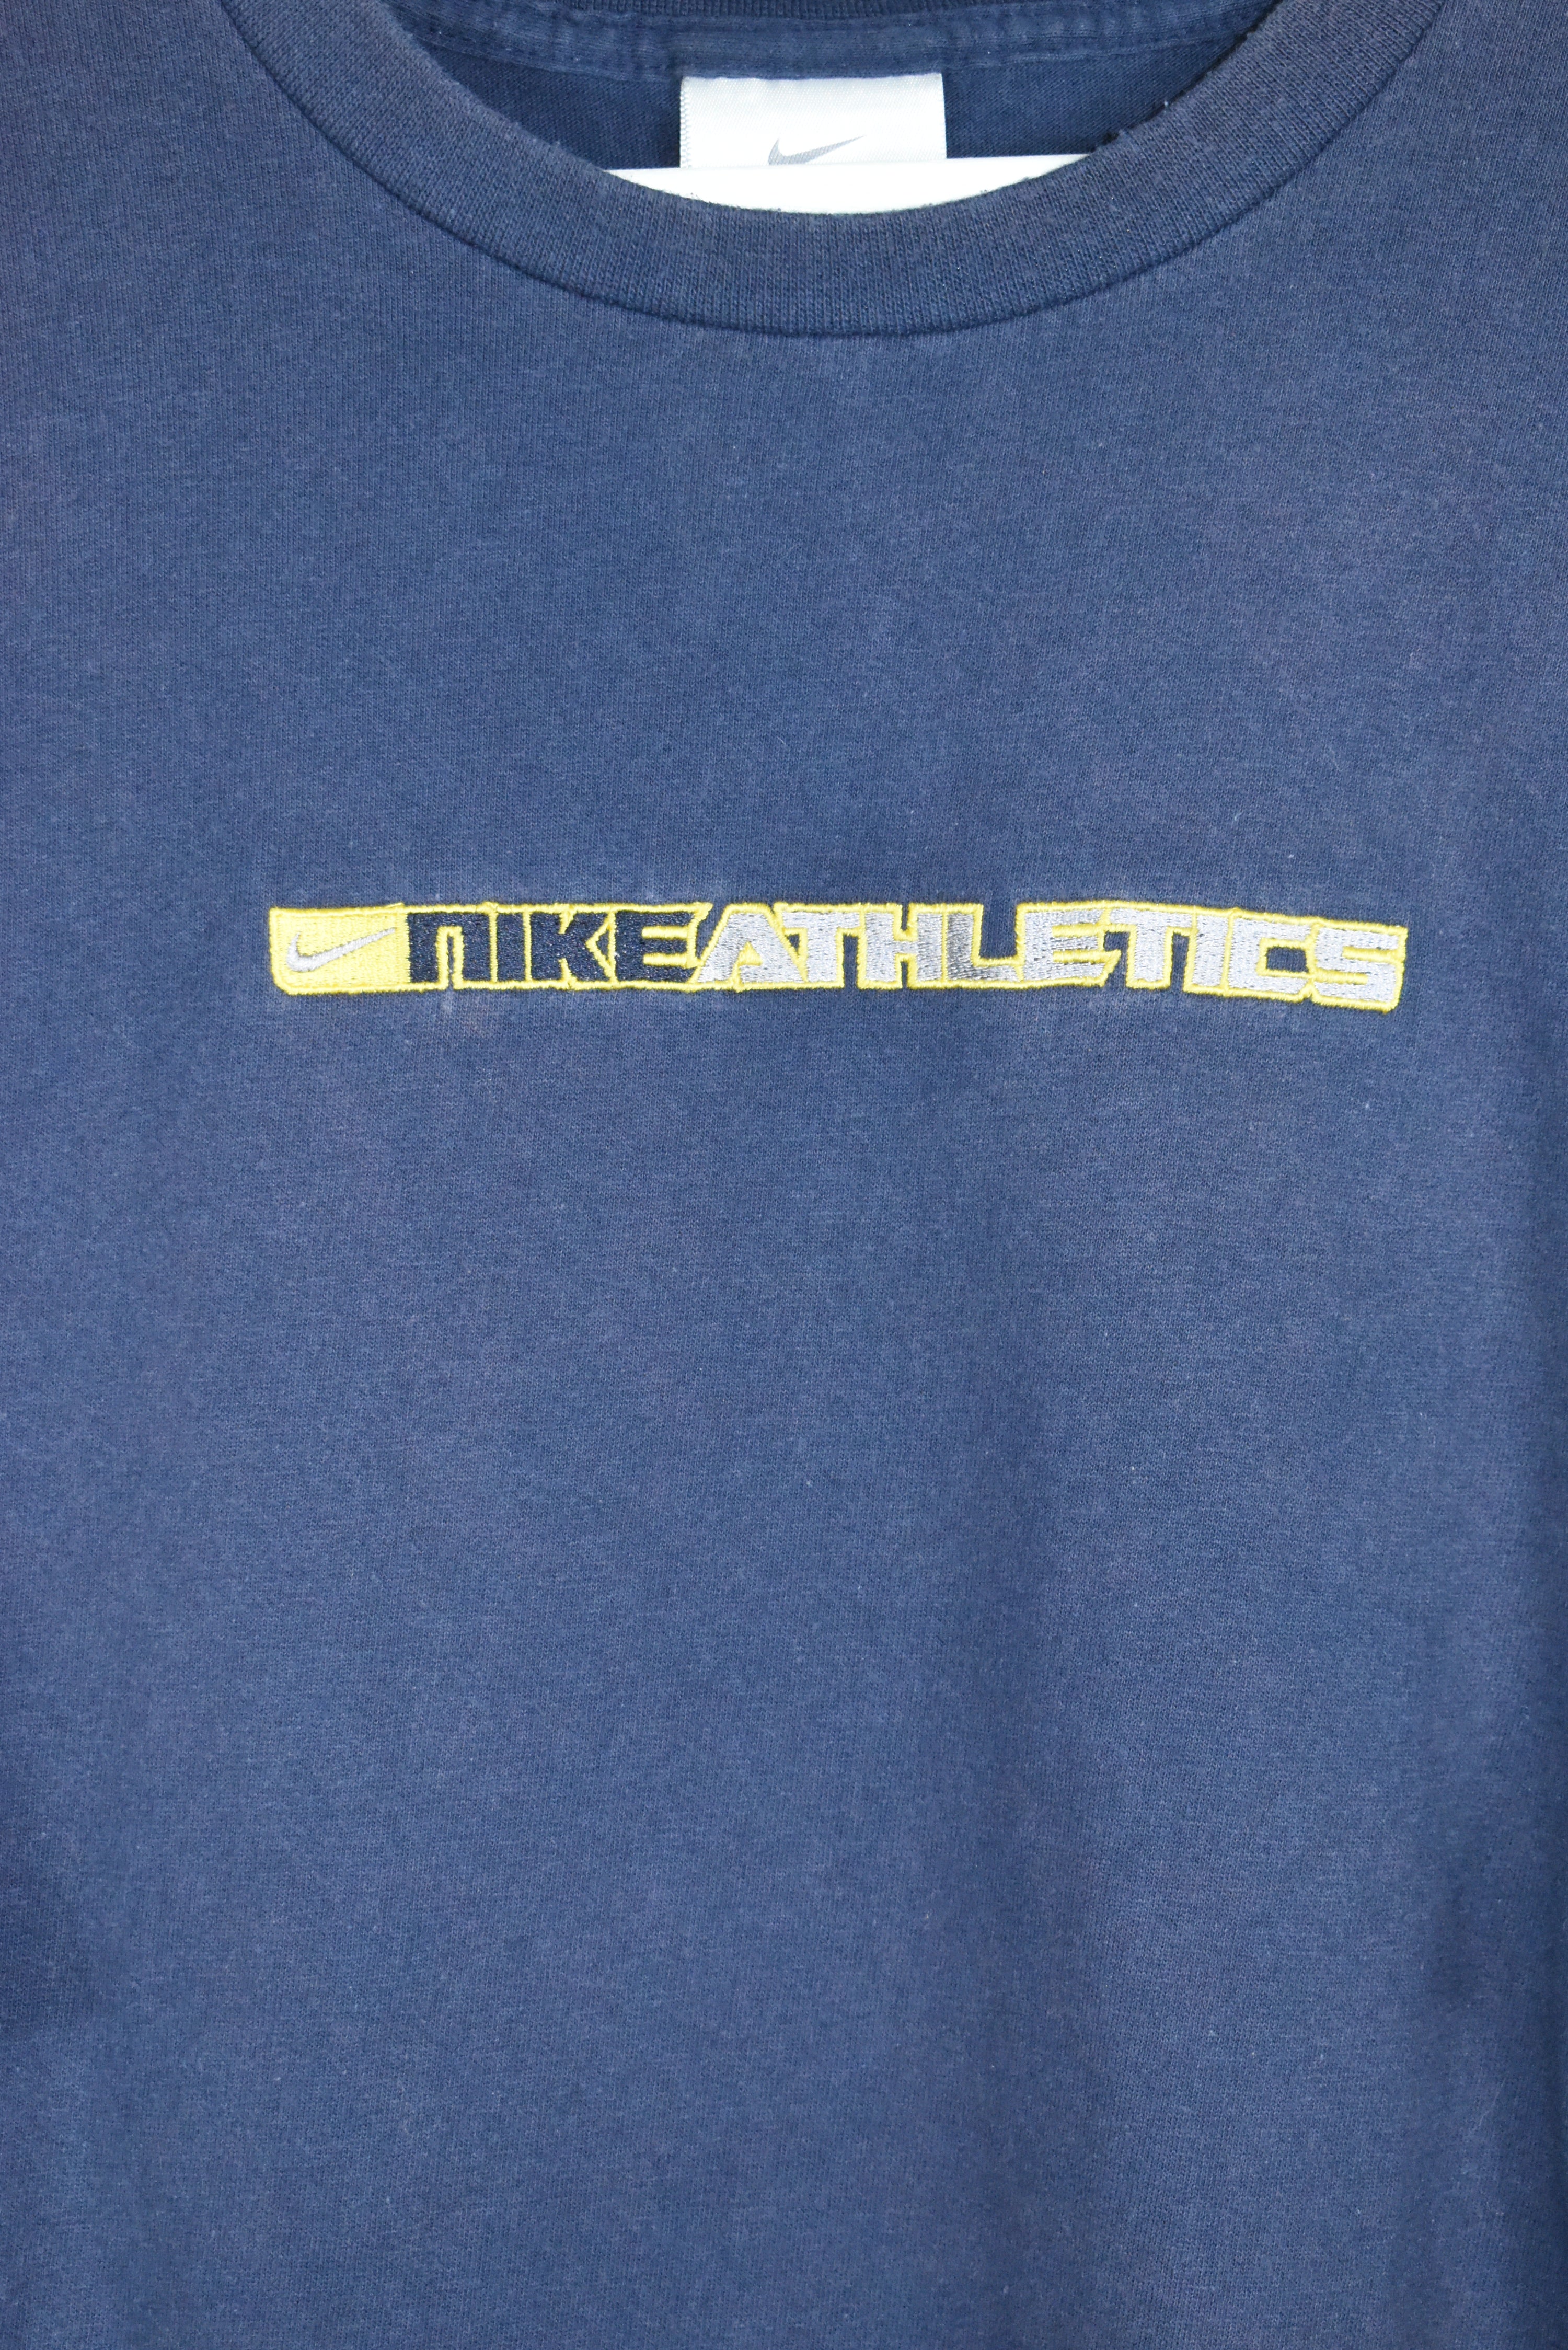 Vintage Nike Athletics Embroidery T Shirt Xlarge